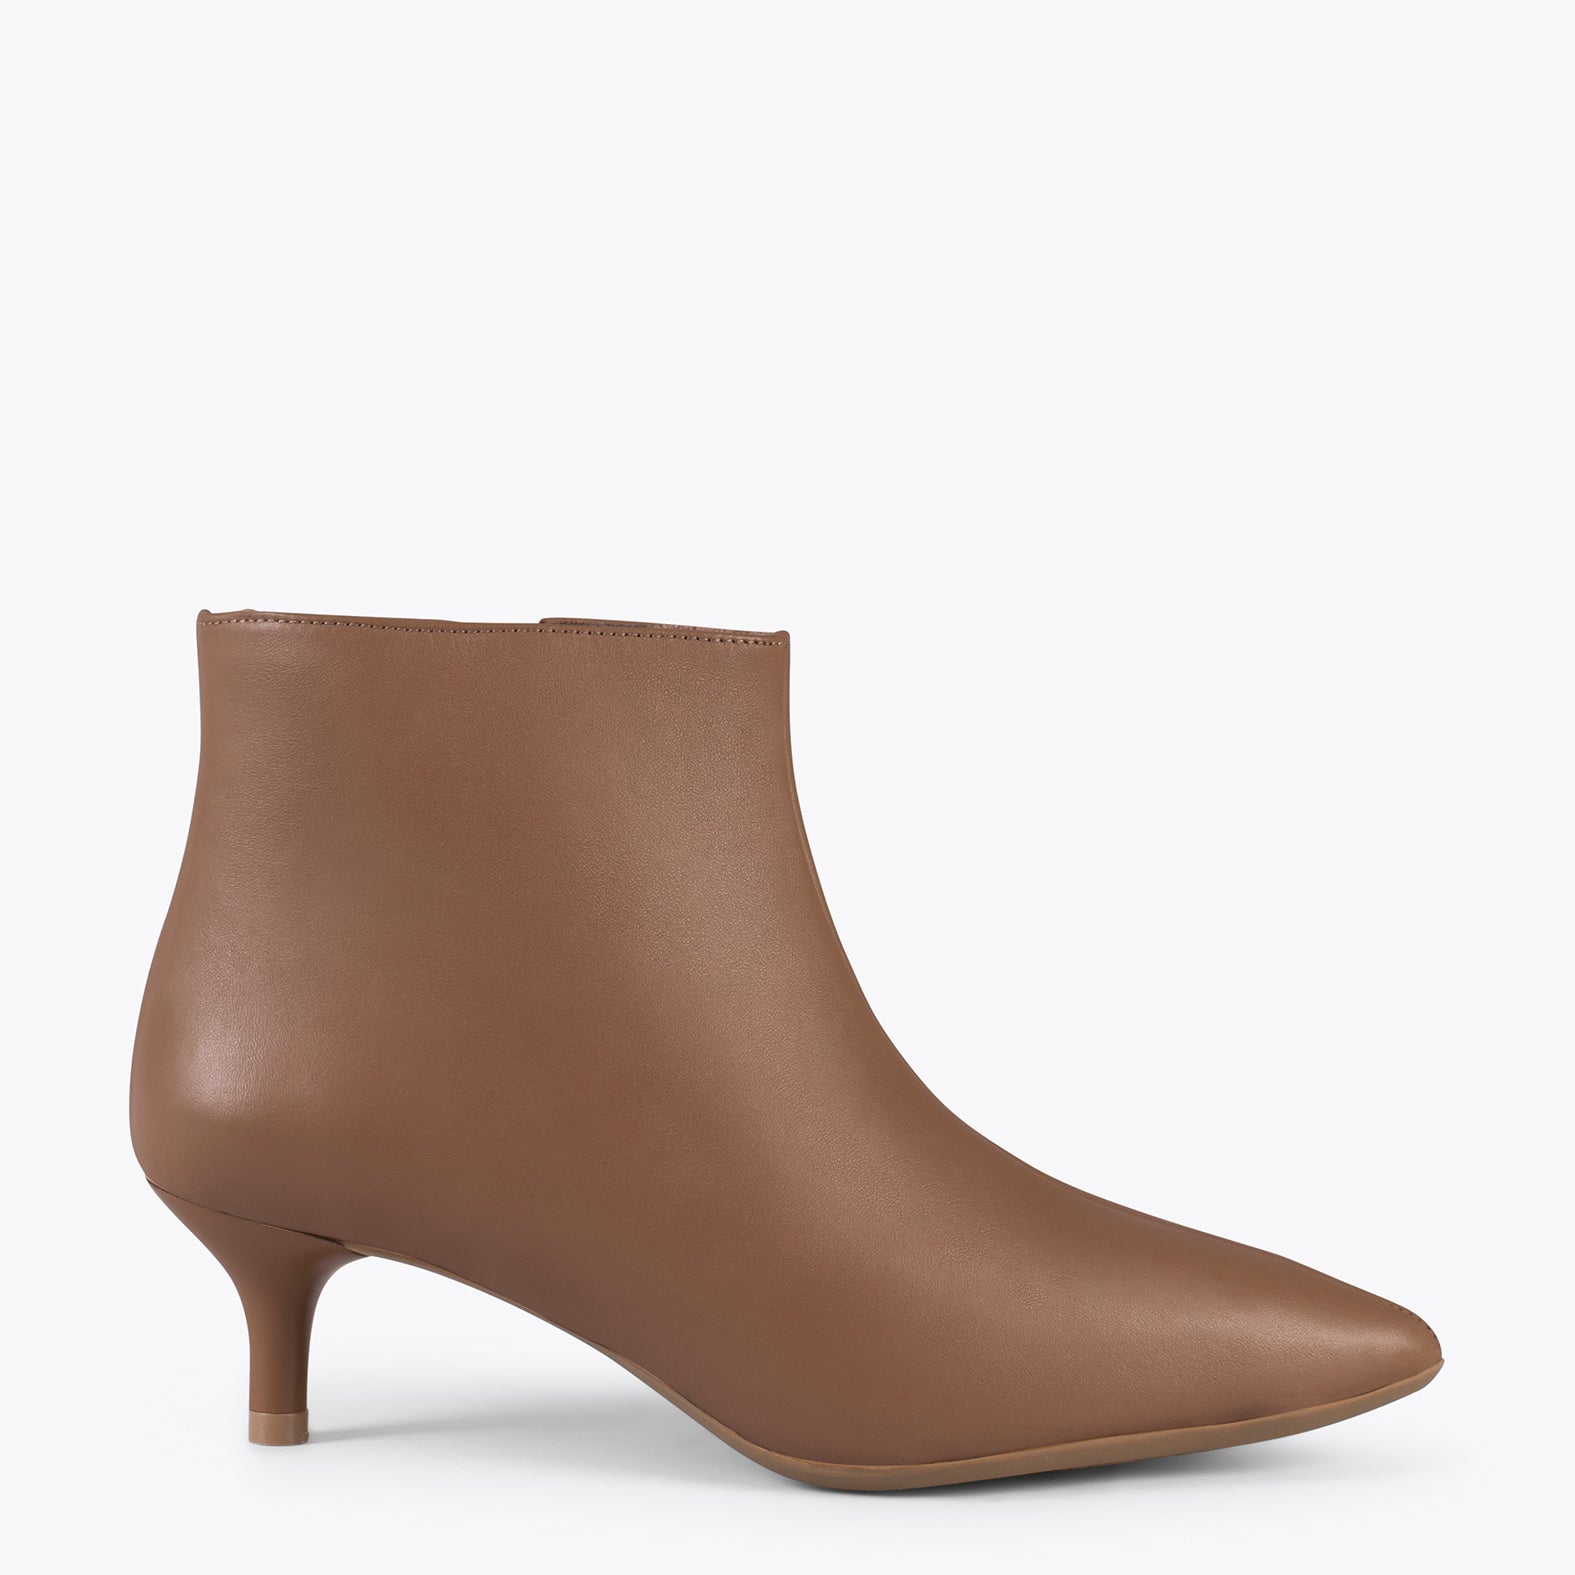 OUTFIT – BROWN elegant low heel booties